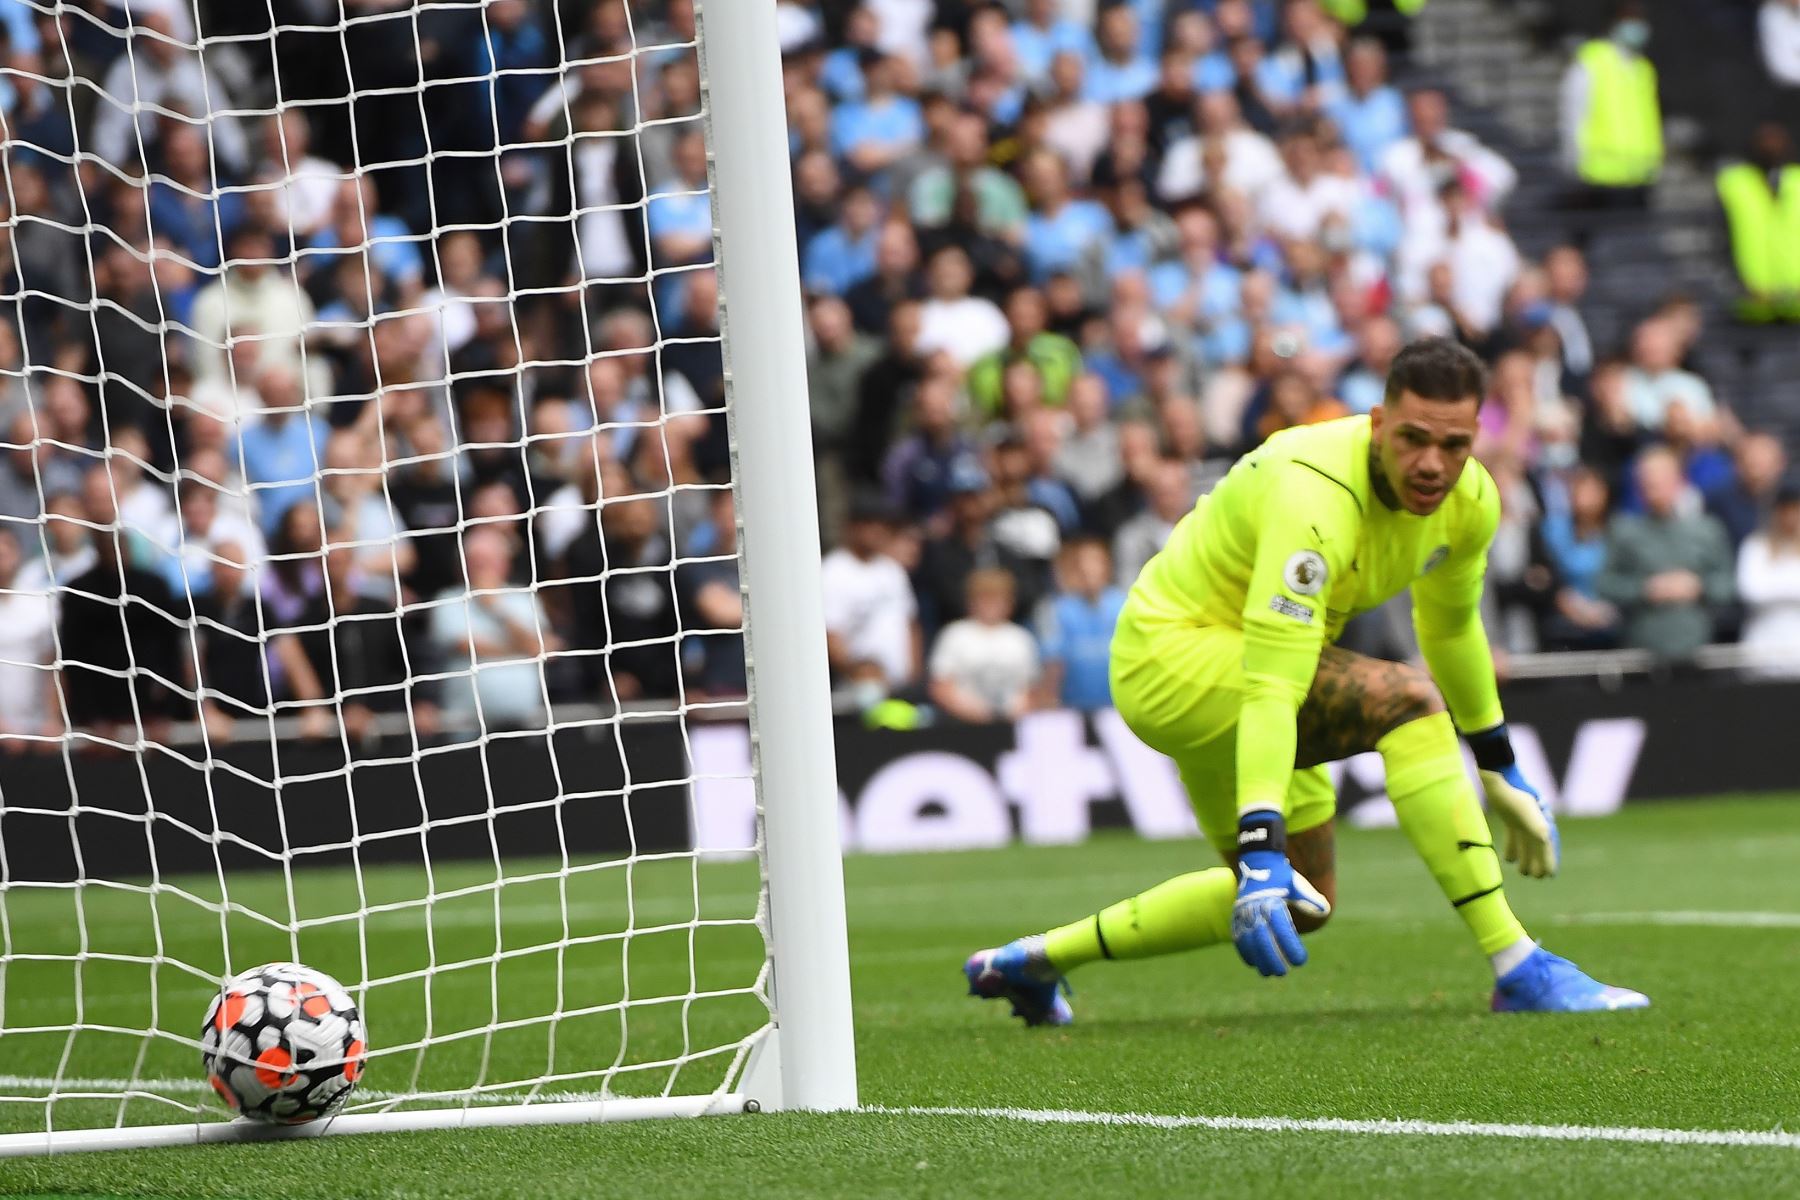 El portero del Manchester City, Ederson, observa el balón rodar hacia la esquina de su red tras el disparo de larga distancia de Son Heung-Min del Tottenham durante partido por la Premier League, en Londres. Foto: EFE